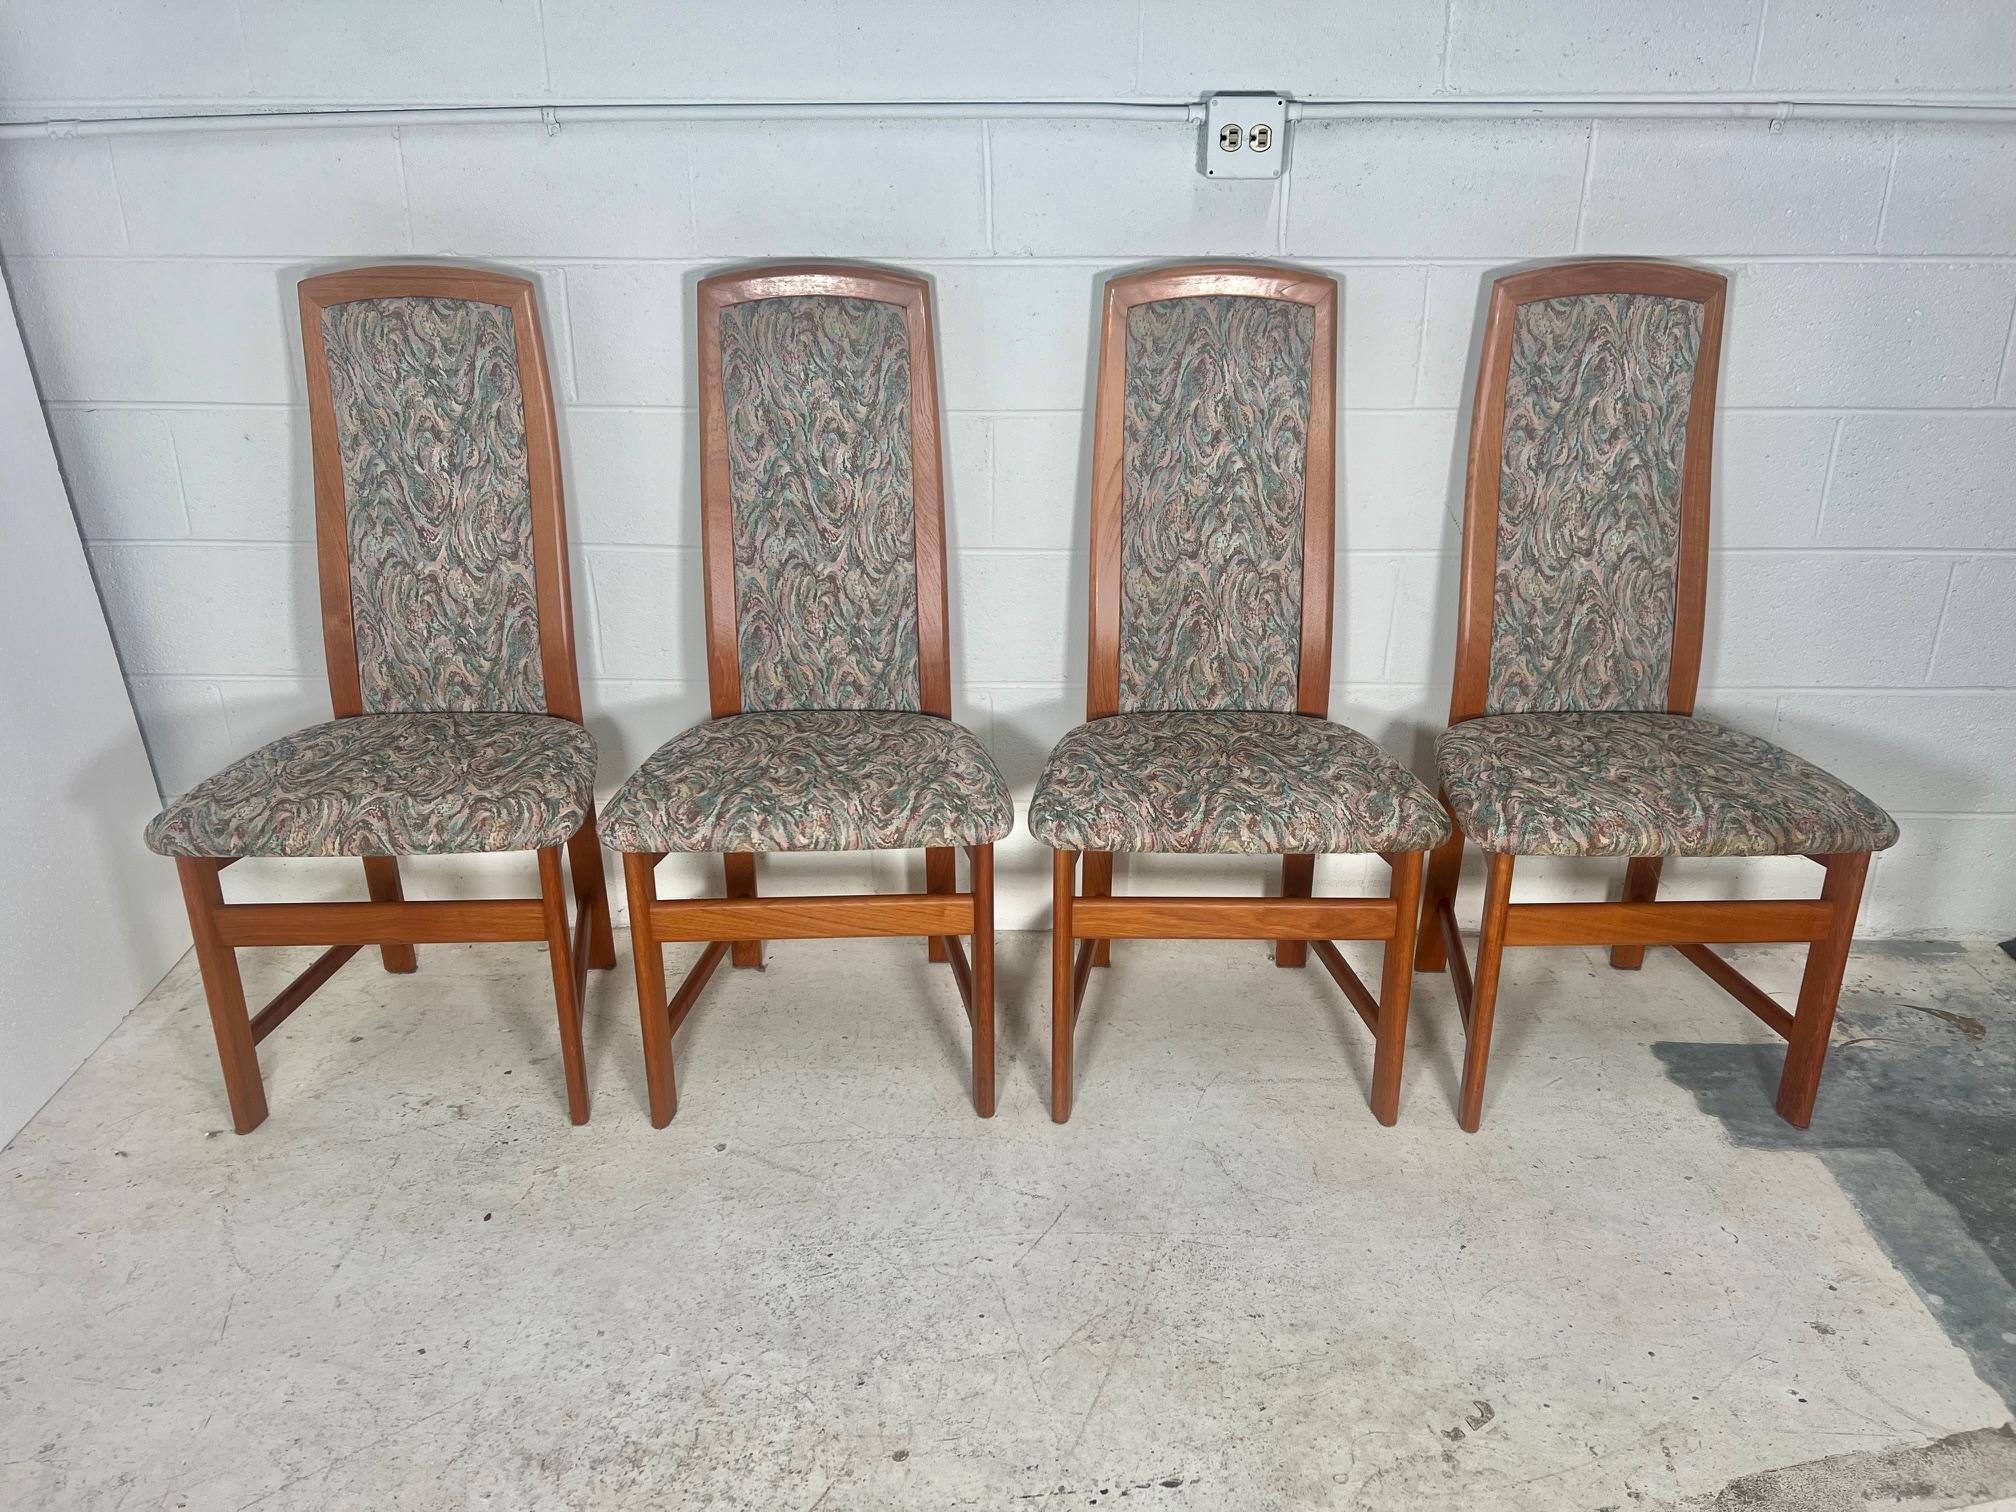 Magnifique ensemble de 4 chaises de salle à manger en teck de style danois du milieu du siècle, avec dossier en tissu paddé. Fabriqué par Nordic Furniture, Markdale Ontario Canada. Estampillé en dessous.

Très bon état. Toutes les chaises sont très